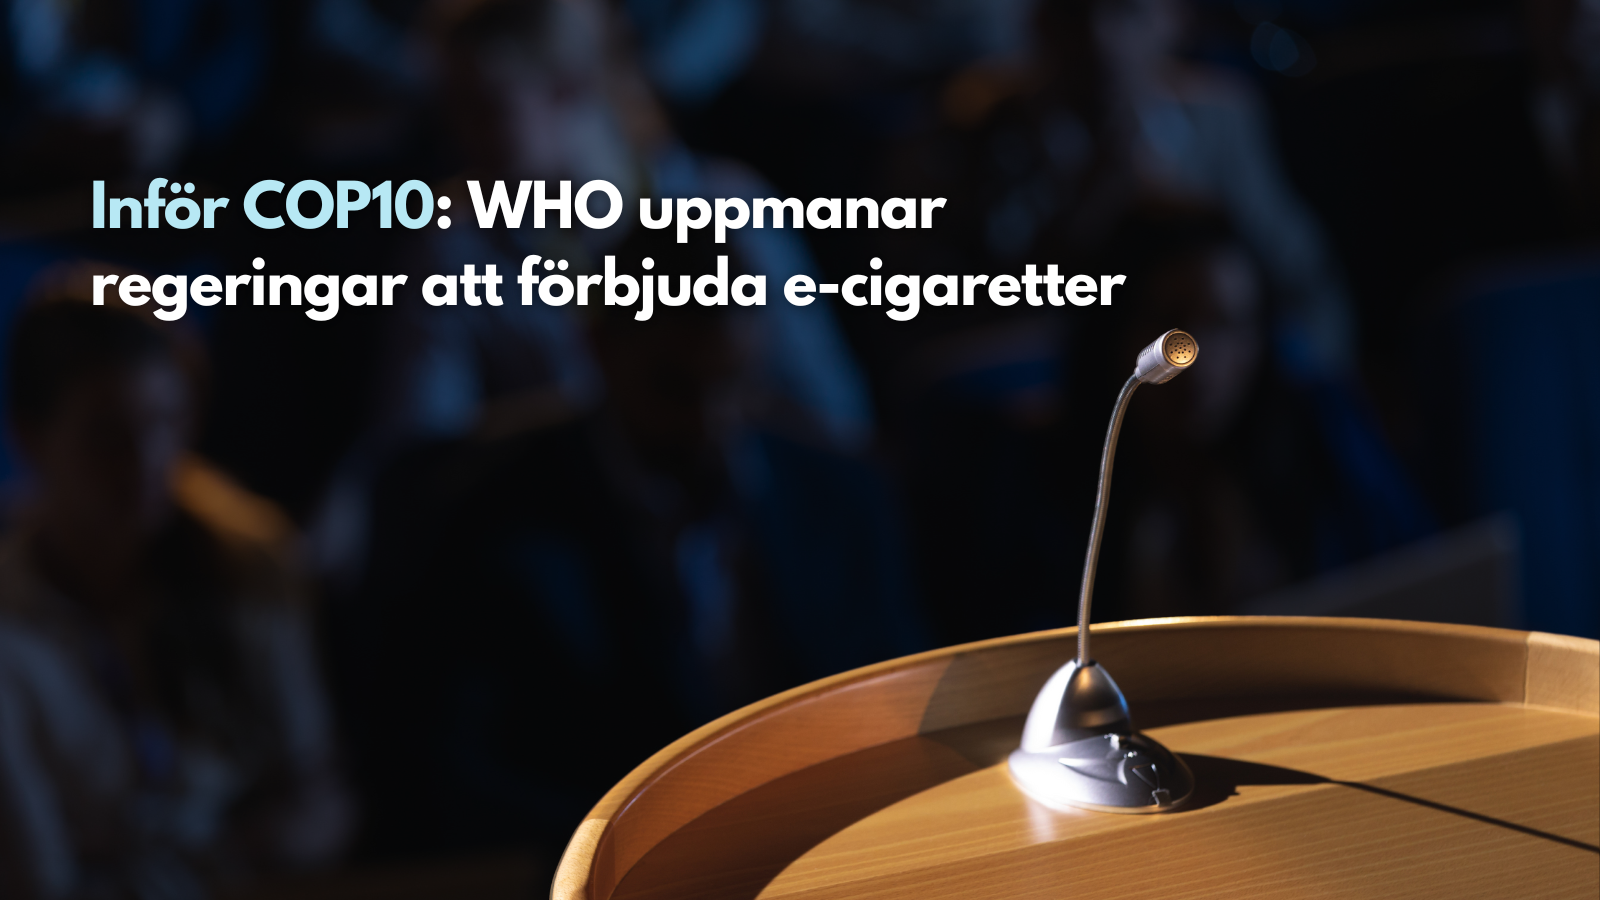 Inför COP10: WHO uppmanar regeringar att förbjuda e-cigaretter